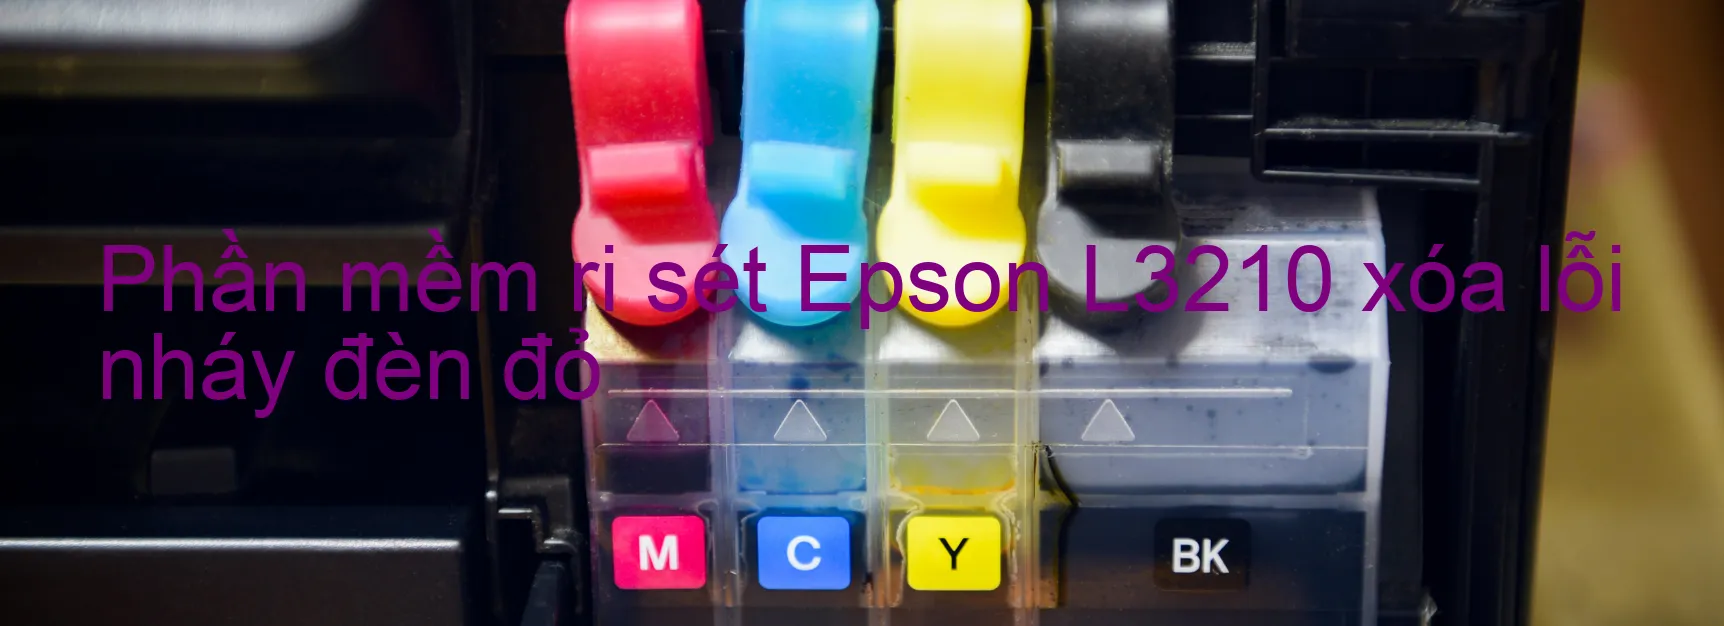 Phần mềm reset Epson L3210 xóa lỗi nháy đèn đỏ